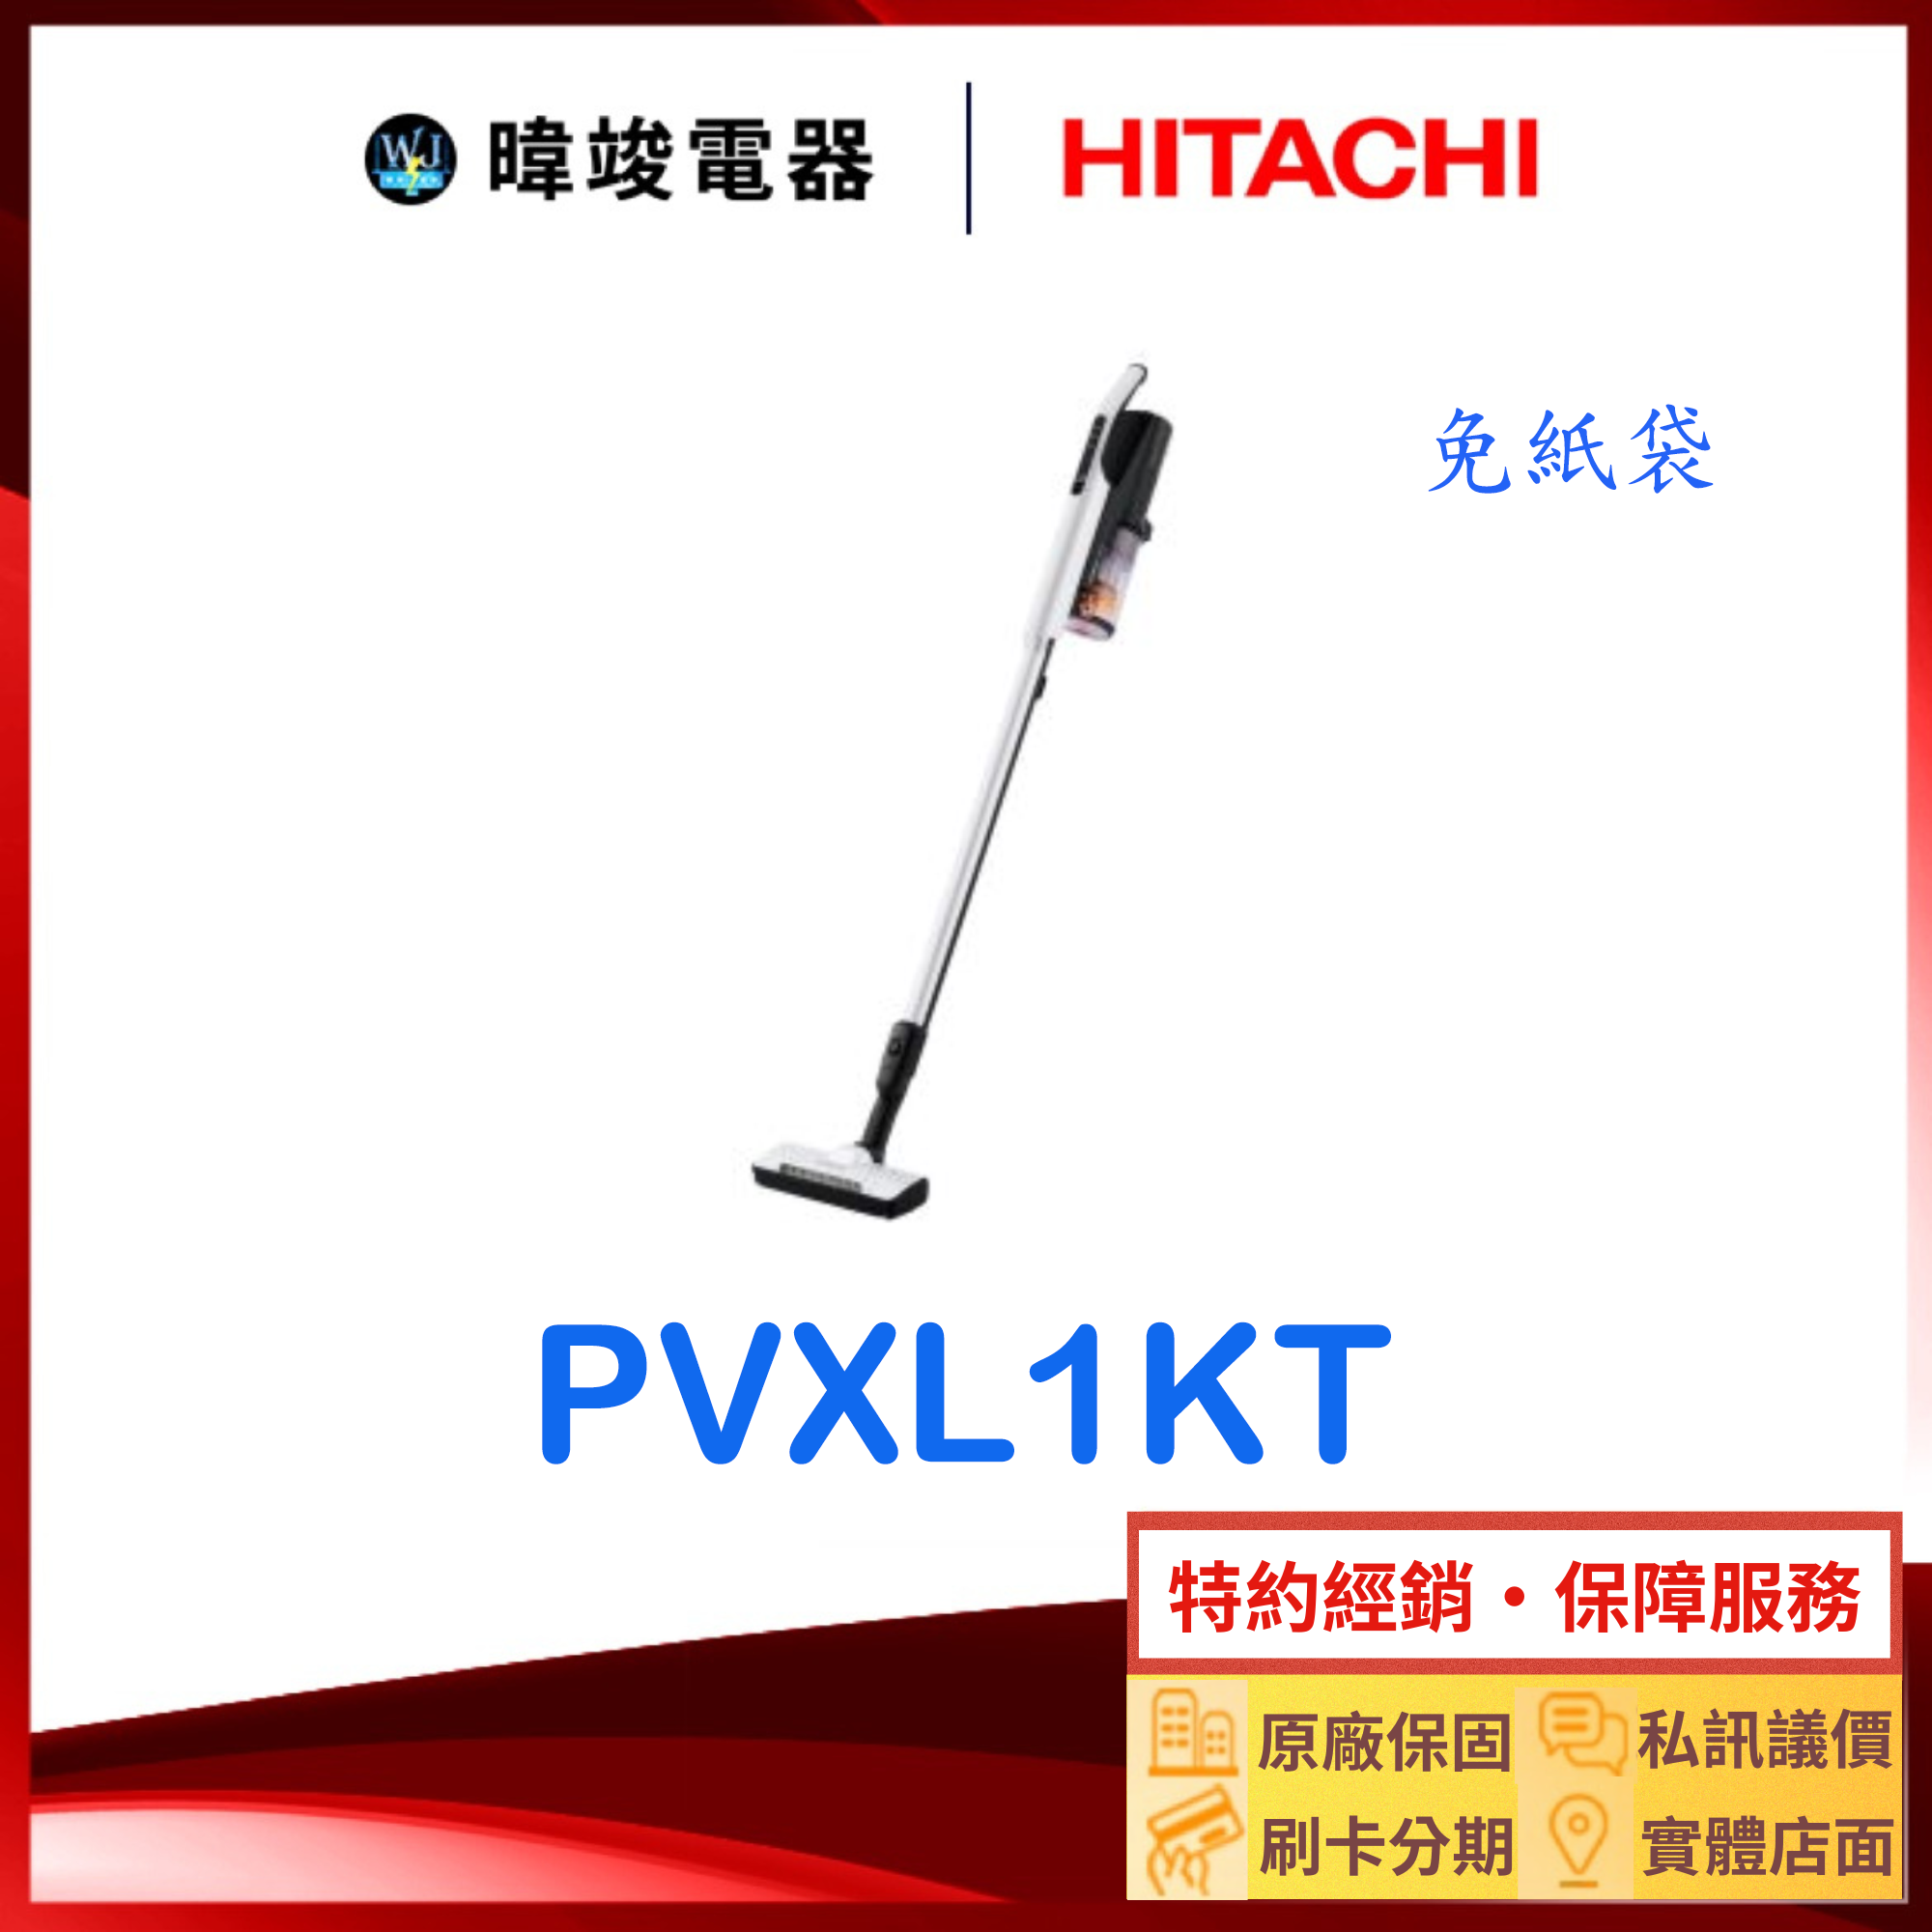 現貨【原廠保固】HITACHI 日立 PVXL1KT 直立式吸塵器 PV-XL1KT 無線吸塵器 免紙袋 吸塵器